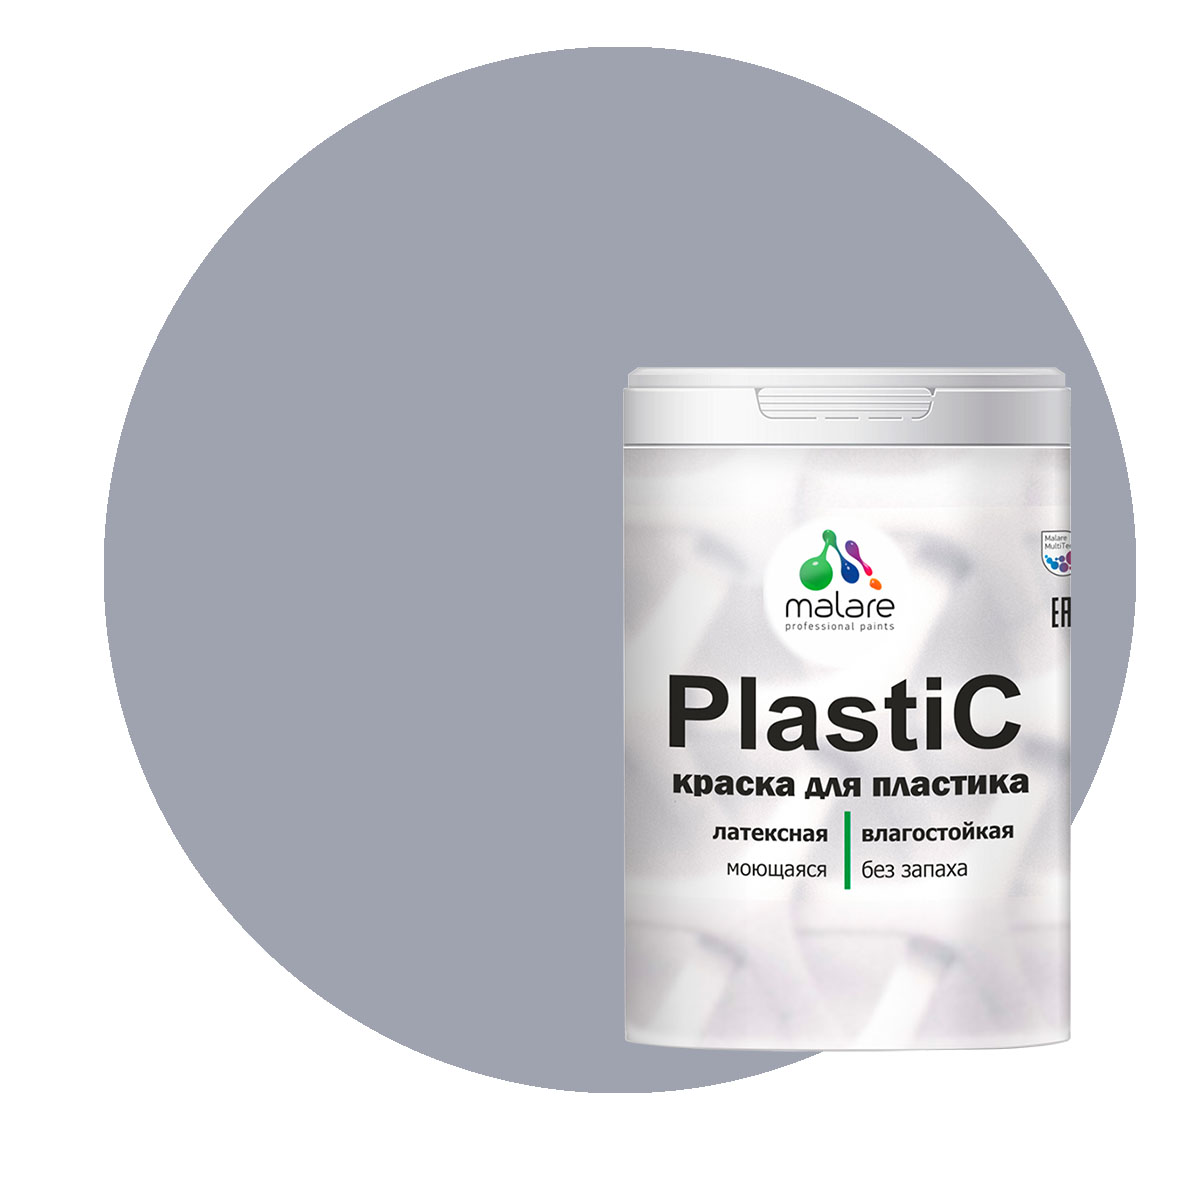 Краска Malare PlastiC для пластика, ПВХ, для сайдинга, темно-серый 2 кг. краска malare plastic для пластика пвх для сайдинга темно серый 1 кг